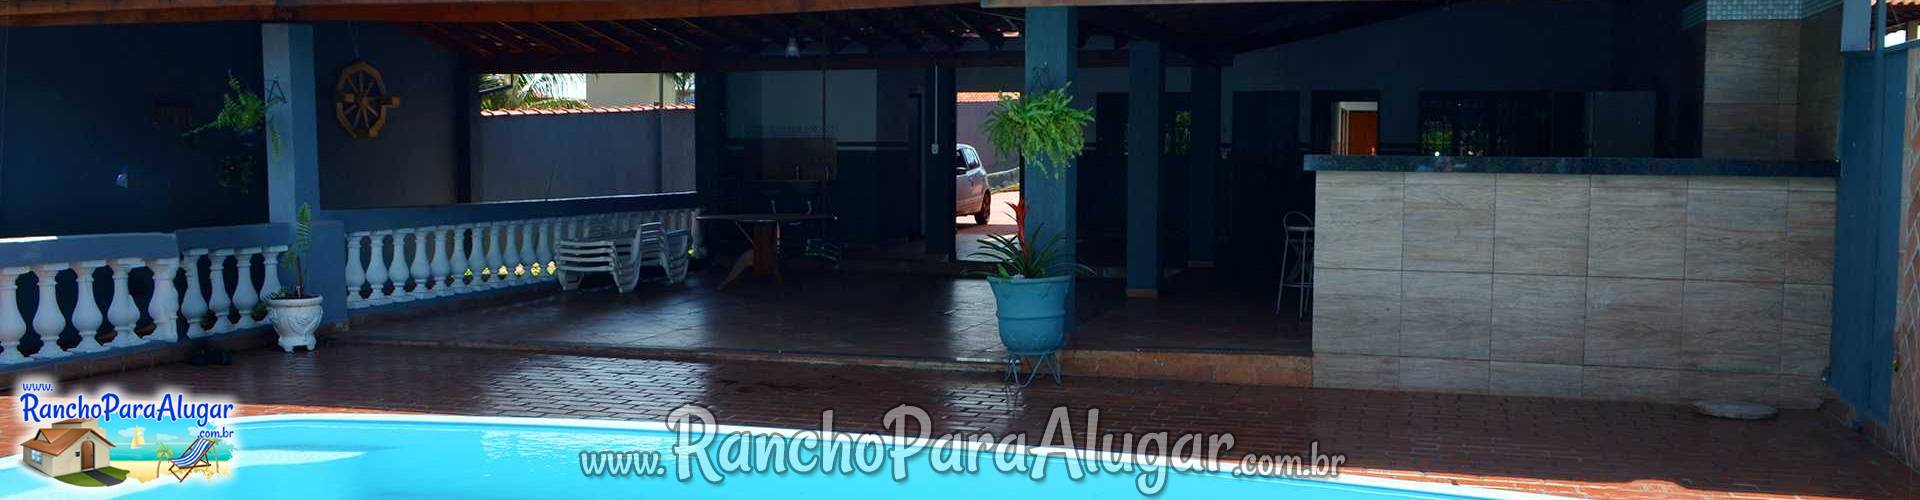 Rancho Laura Mariana para Alugar em Miguelopolis